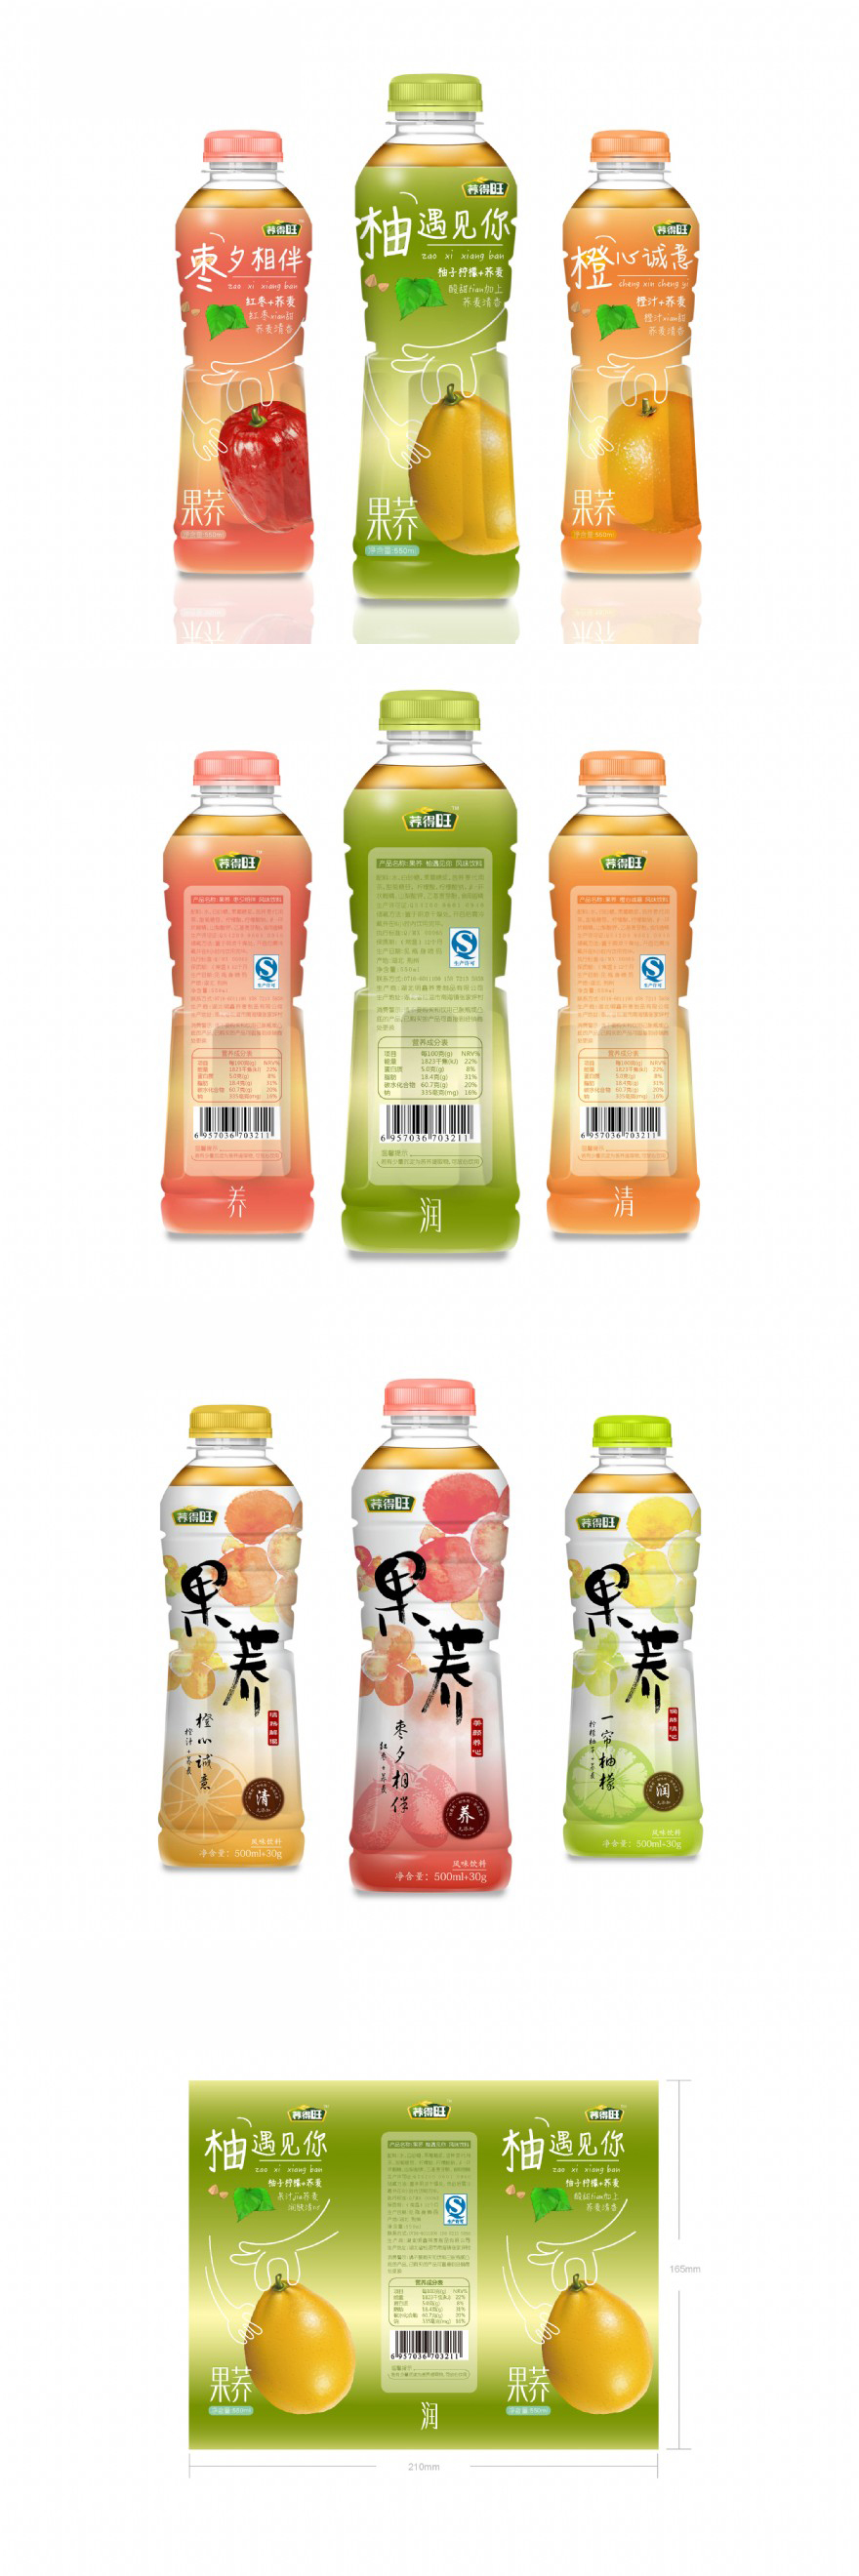 果荞饮品瓶型设计